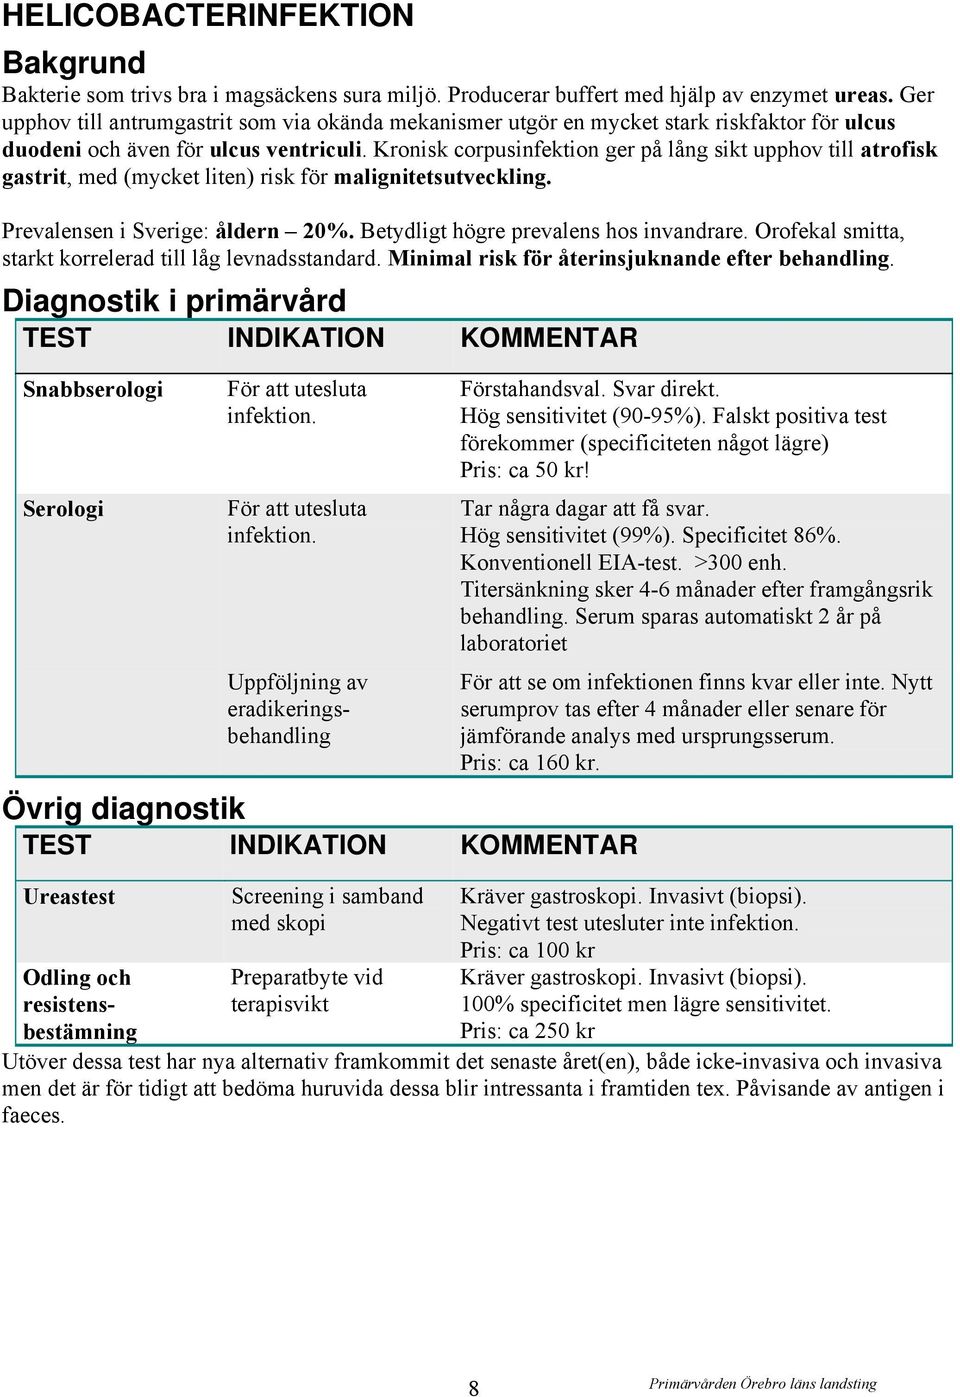 Kronisk corpusinfektion ger på lång sikt upphov till atrofisk gastrit, med (mycket liten) risk för malignitetsutveckling. Prevalensen i Sverige: åldern 20%. Betydligt högre prevalens hos invandrare.